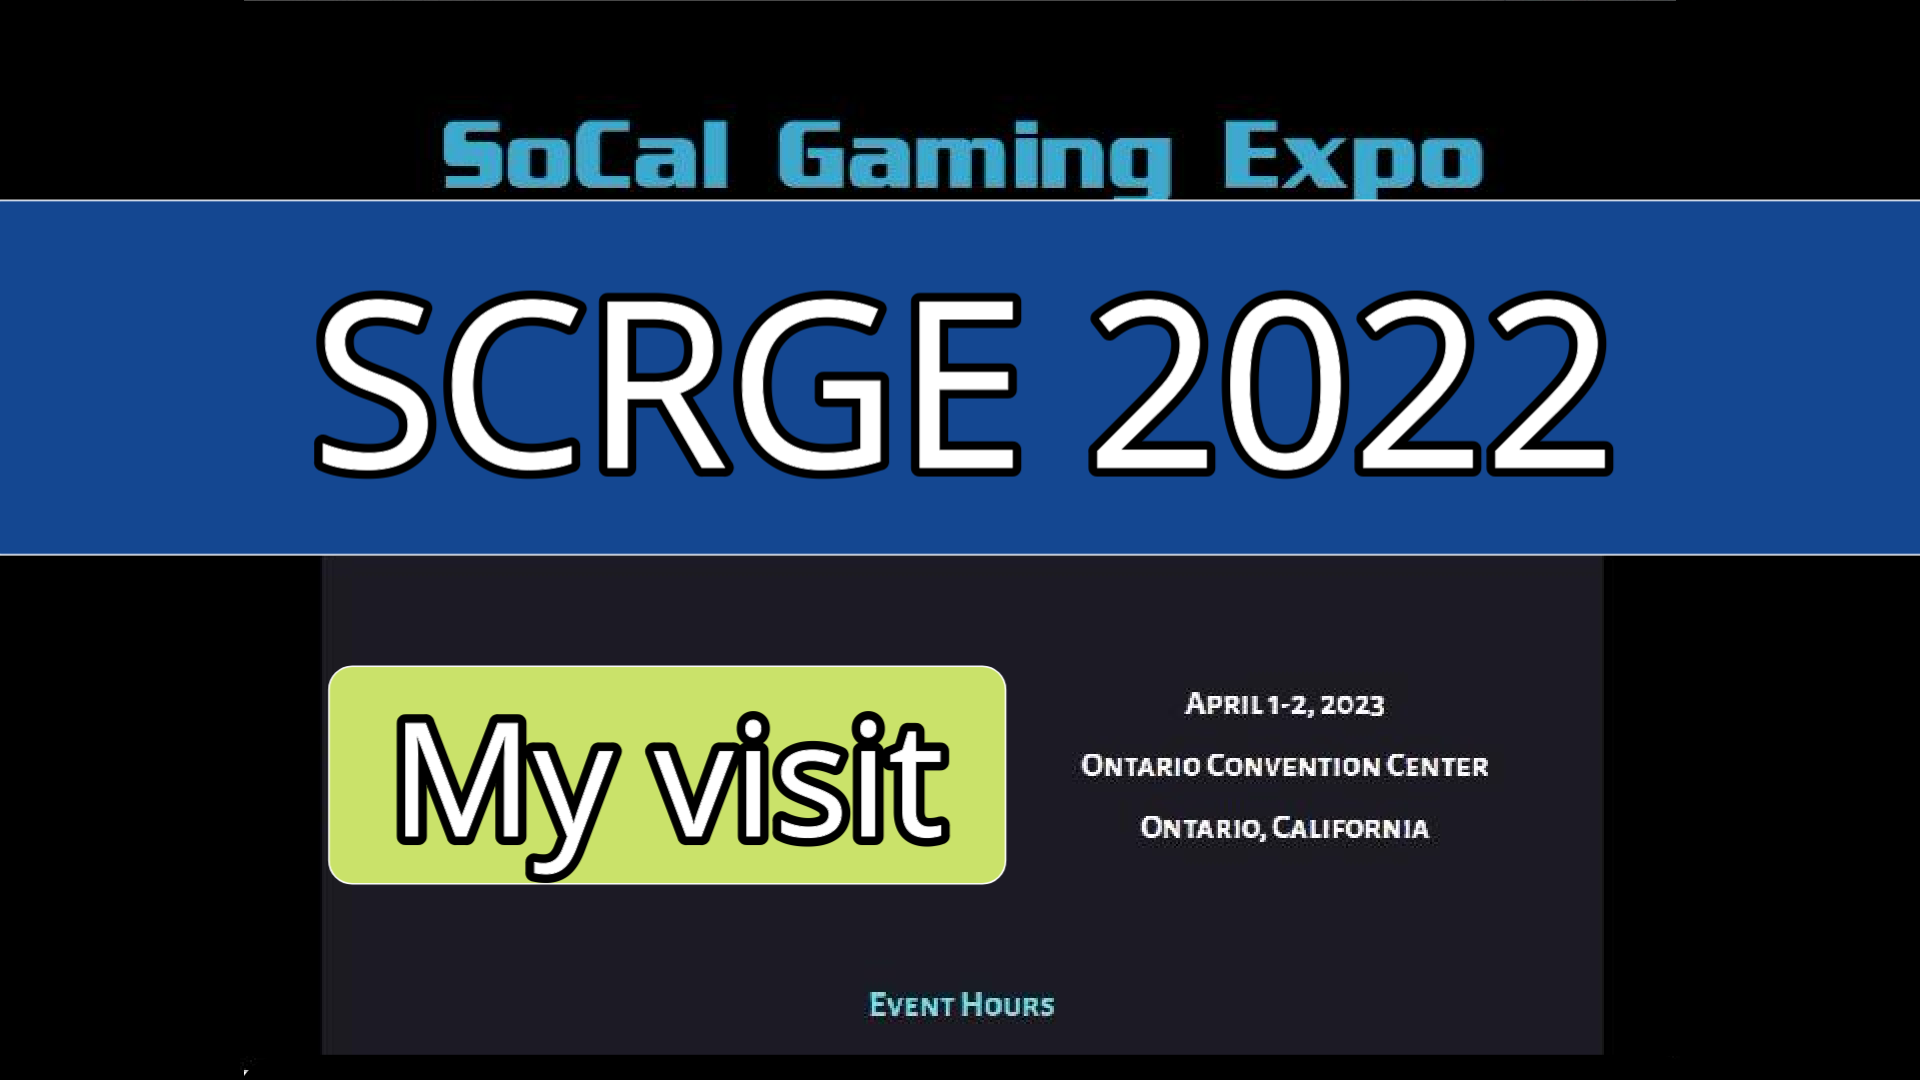 My visit to SCRGE 2022